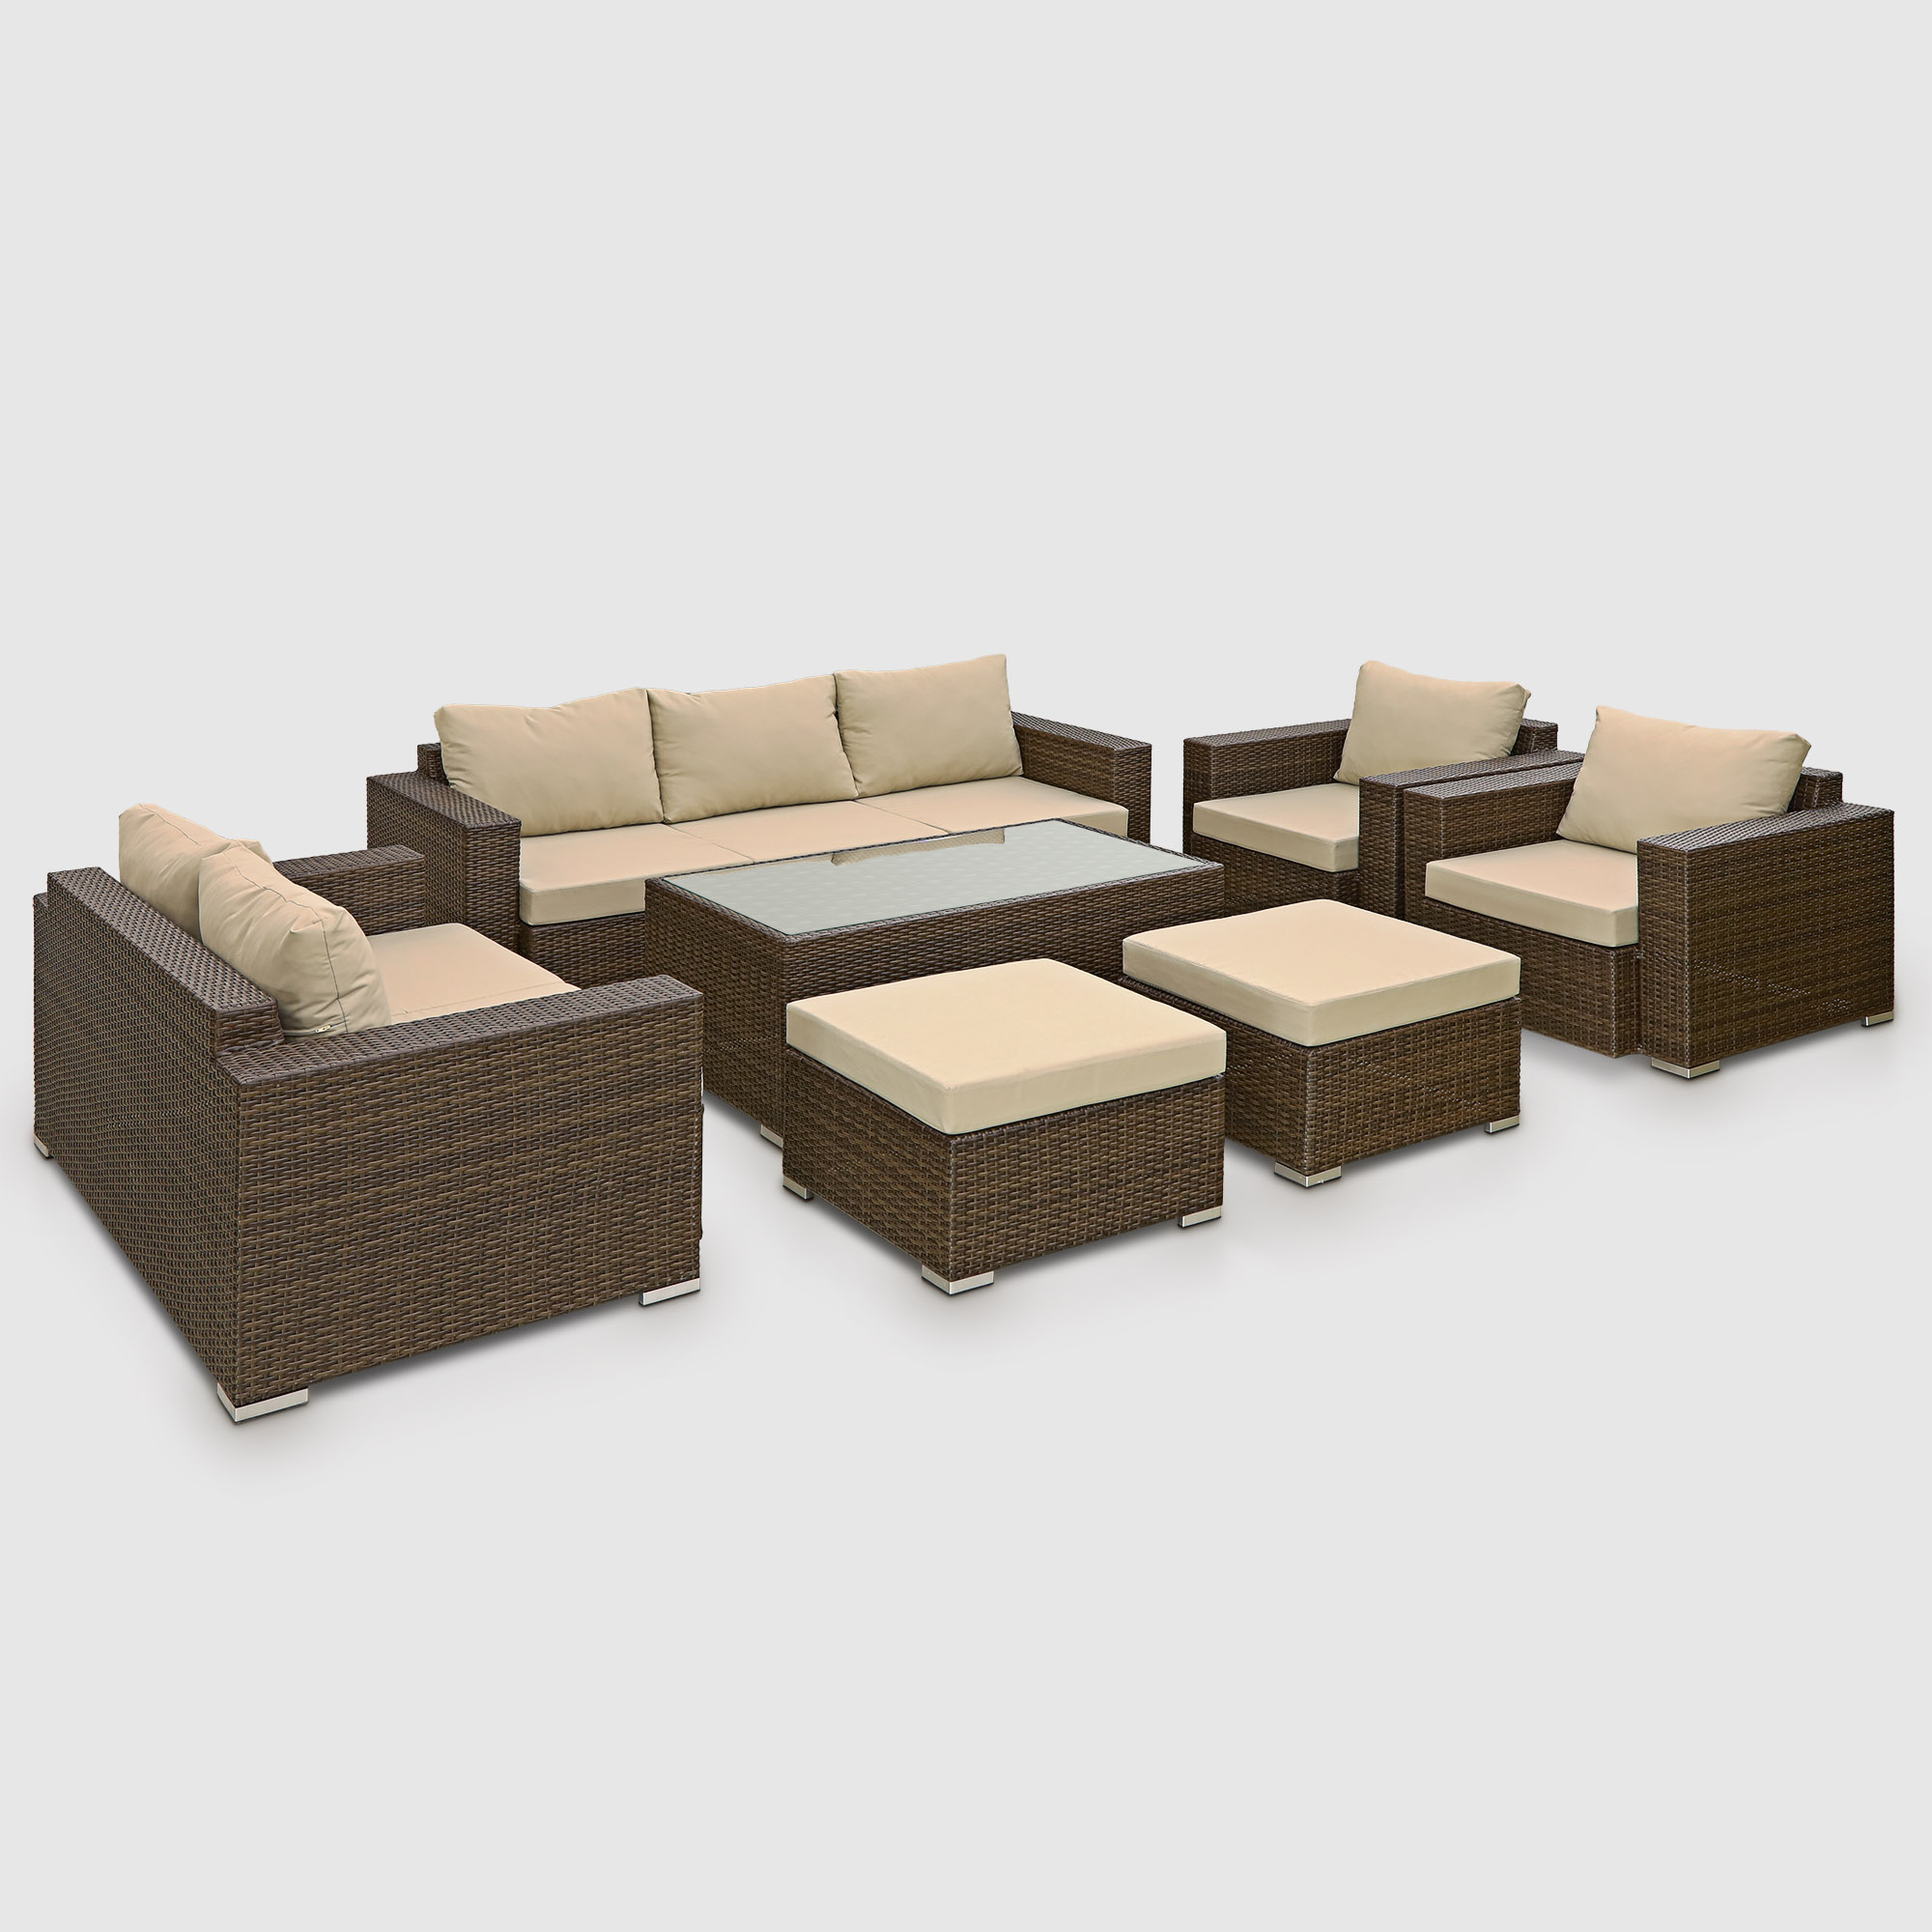 Комплект мебели Ns Rattan Cleo коричнево-бежевый 7 предметов, цвет коричневый, размер 199х68х72